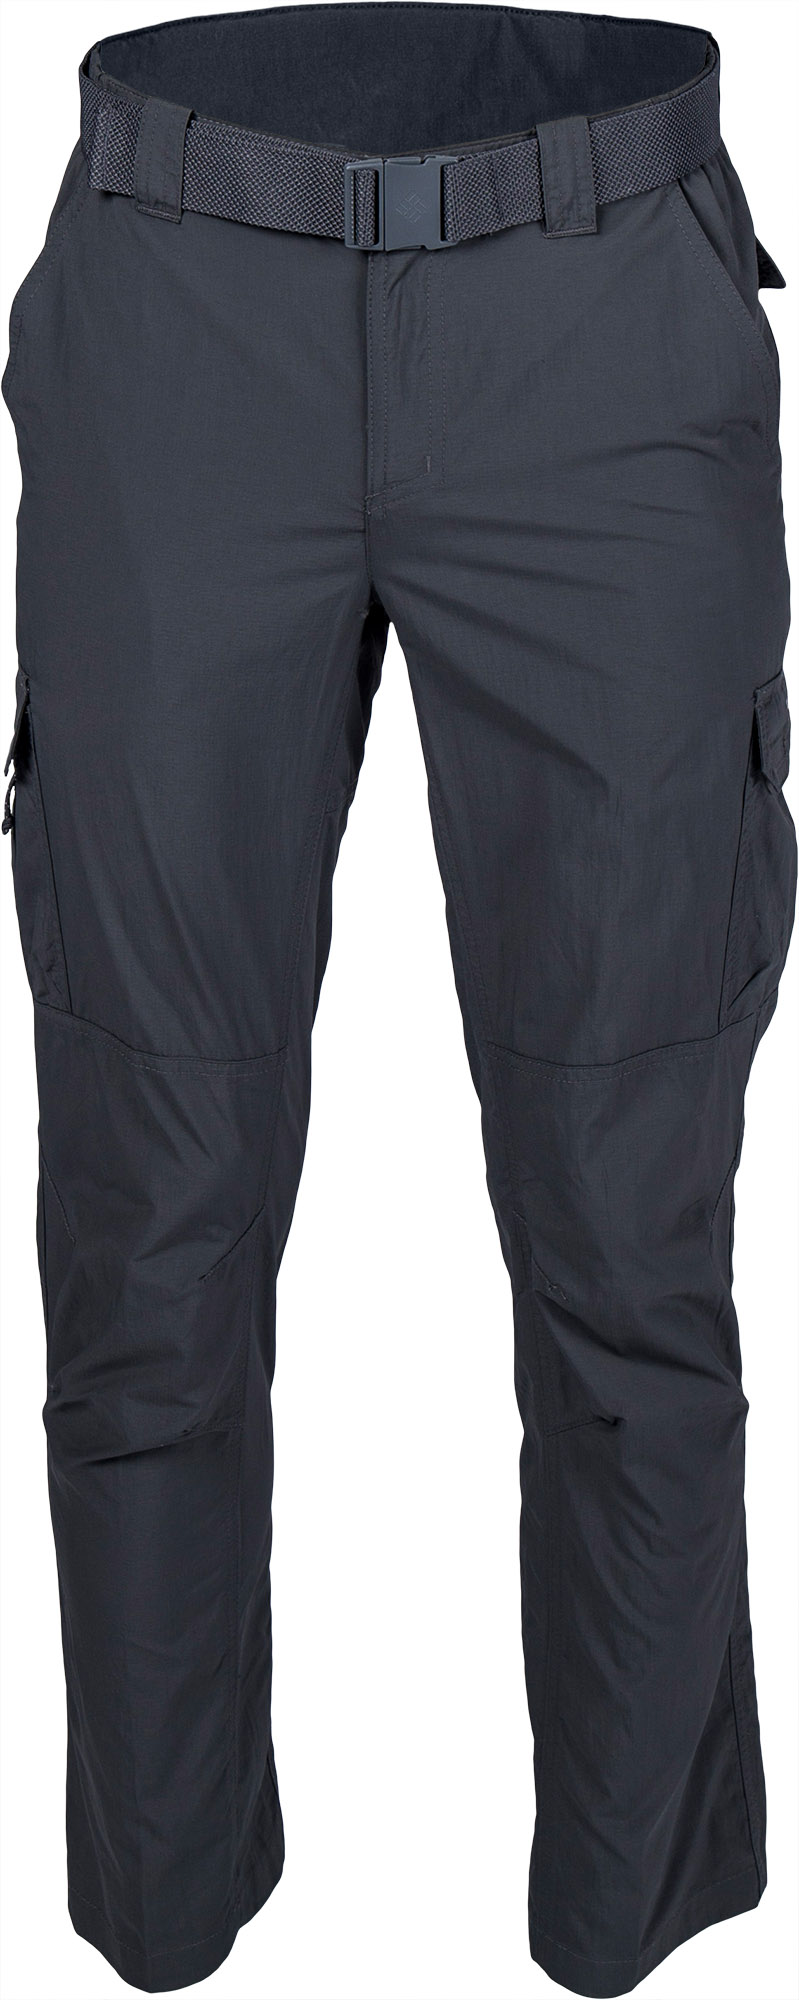 Men’s outdoor pants